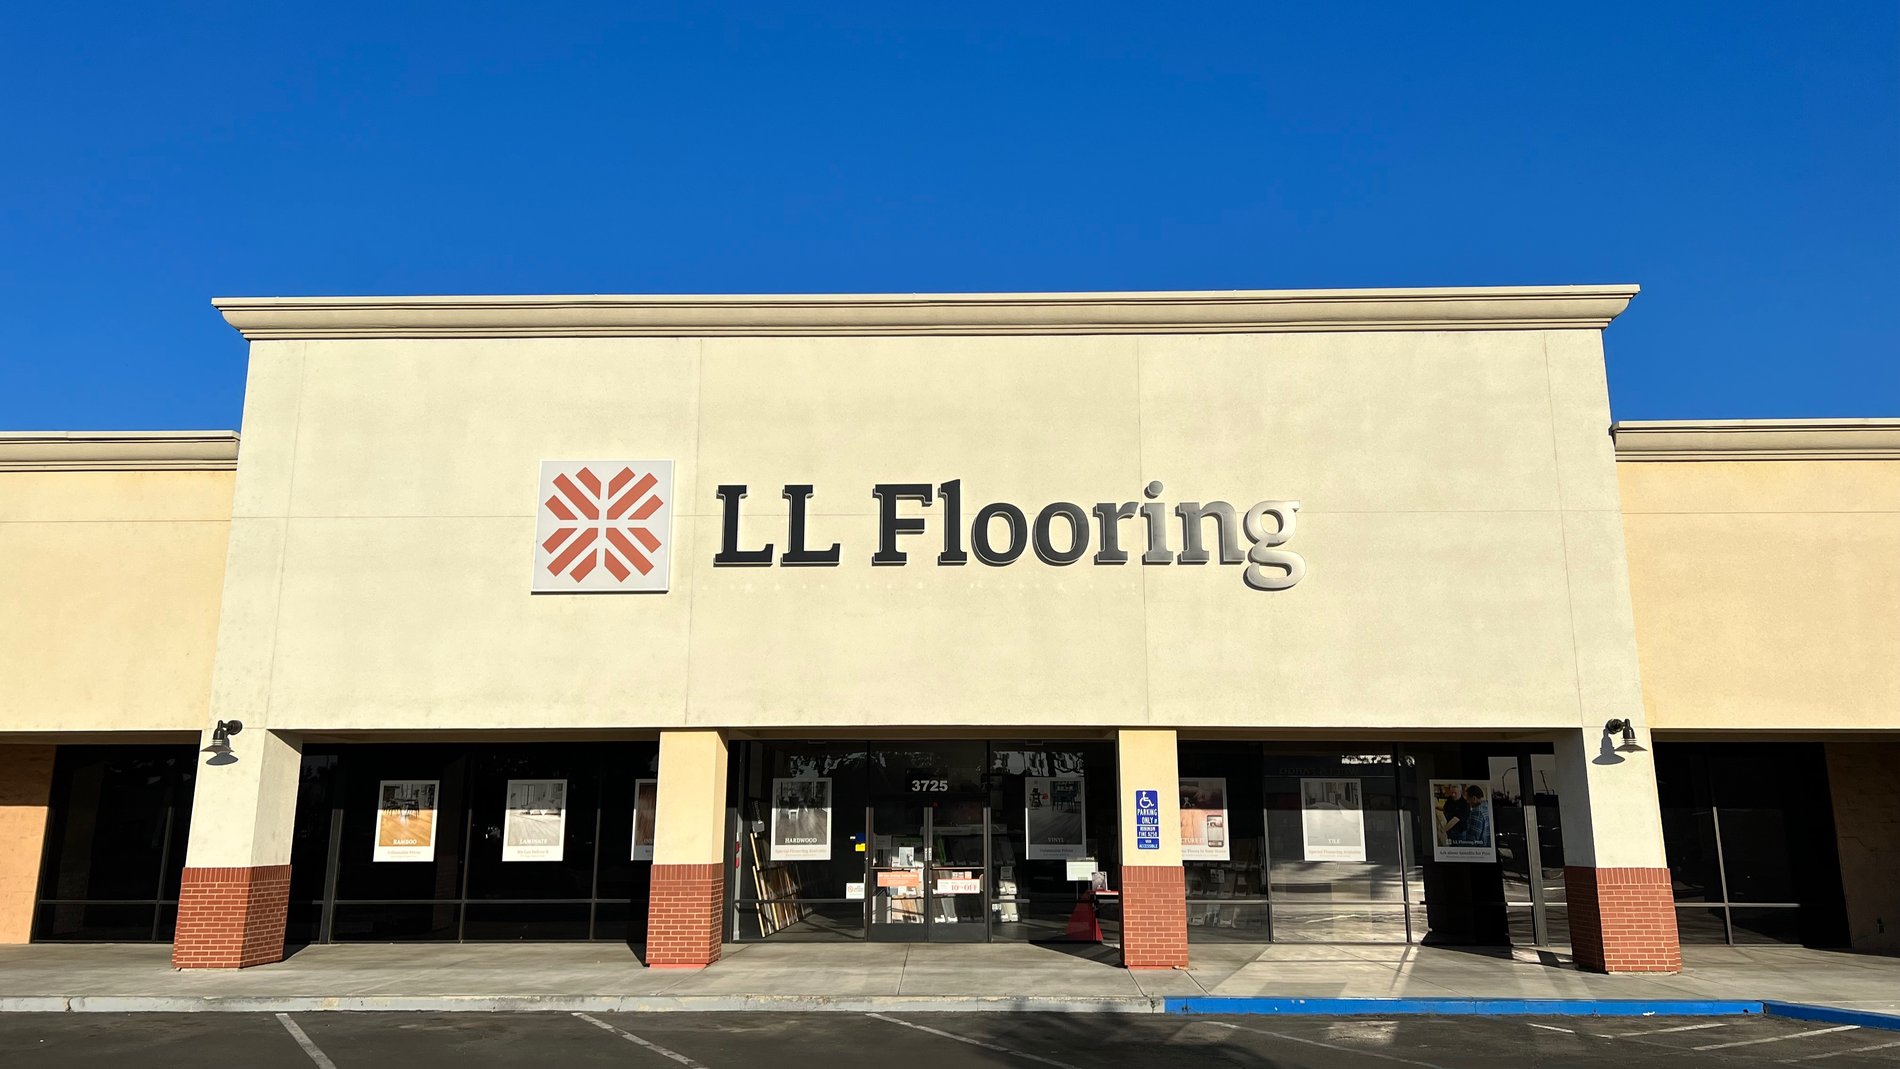 LL Flooring #1437 Visalia | 3725 South Mooney Blvd. | Storefront